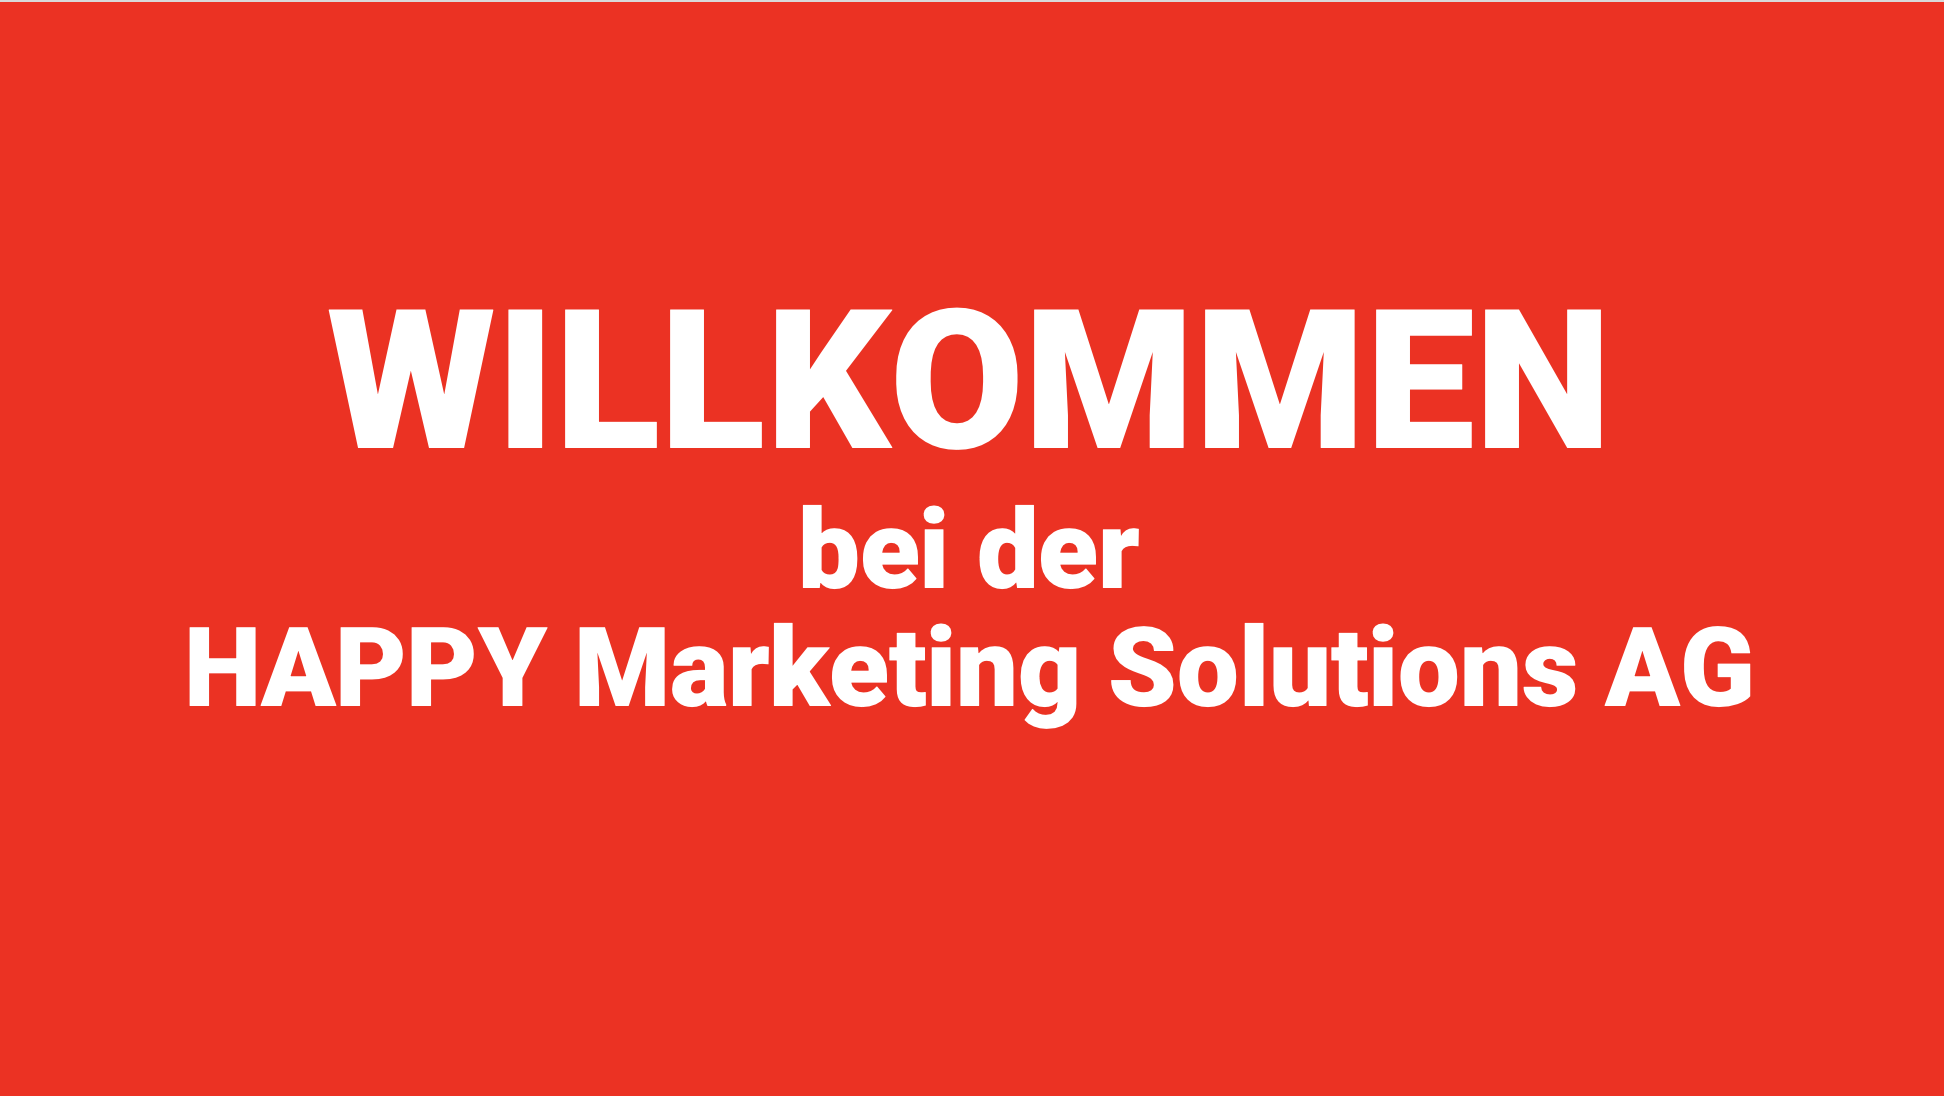 WILLKOMMEN bei der HAPPY Marketing Solutions AG